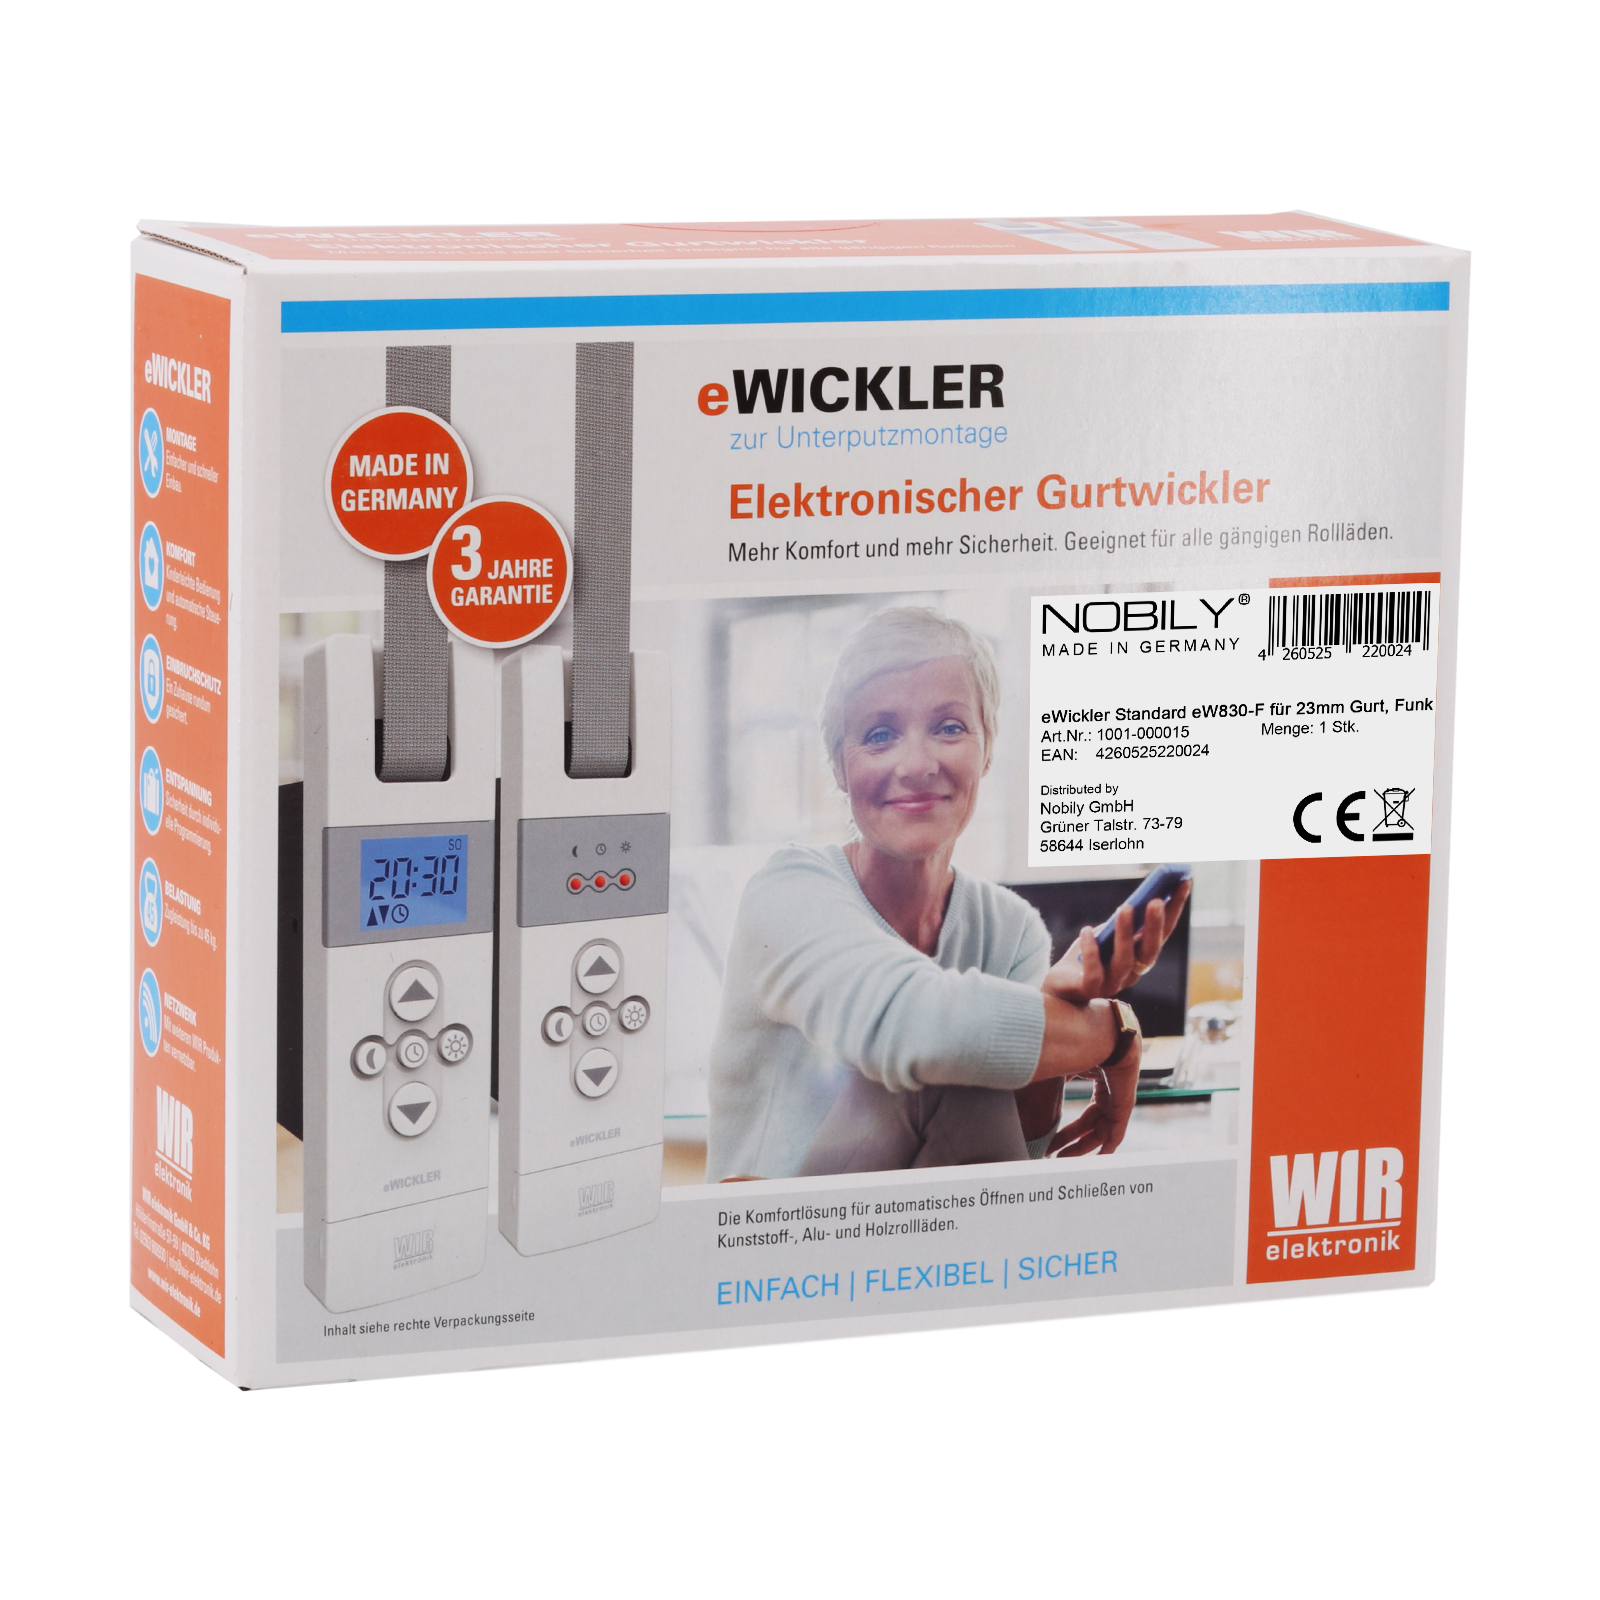 eWickler Gurtwickler Standard eW830-F für 23mm Gurtband, Funk